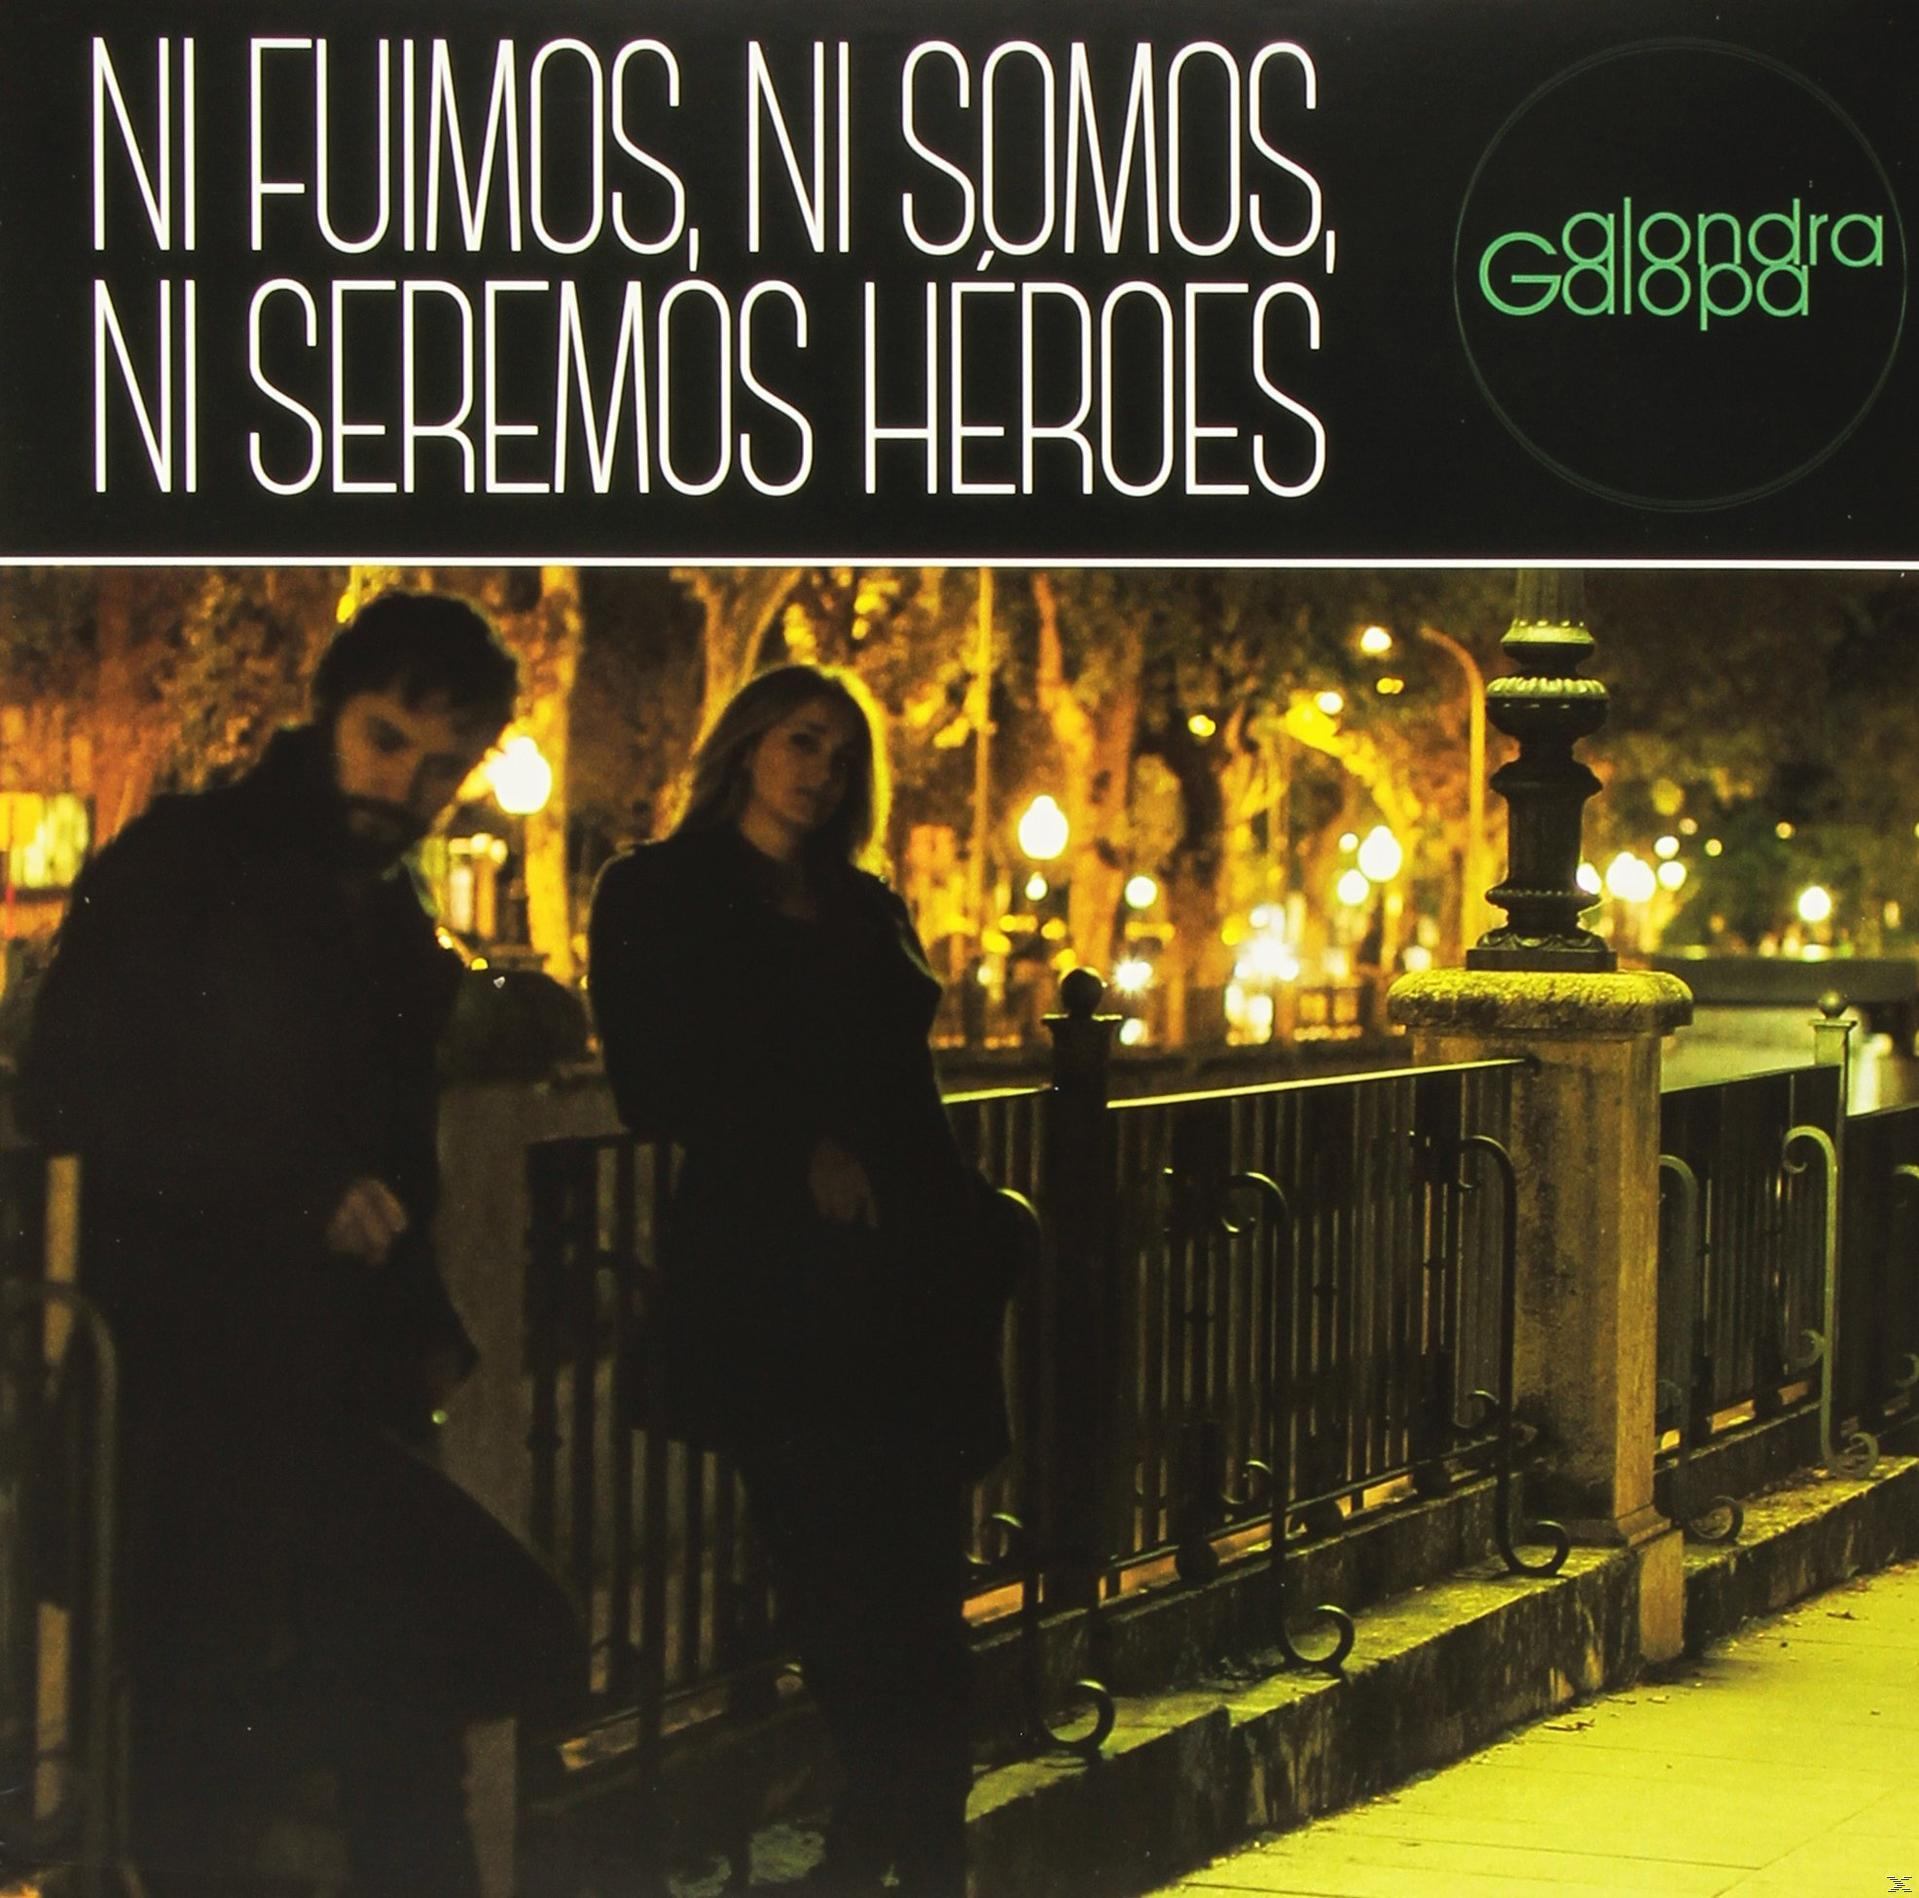 Alonda Galopa - Fuimos, Heros Ni - Somos, Seremos Ni Ni (Vinyl)